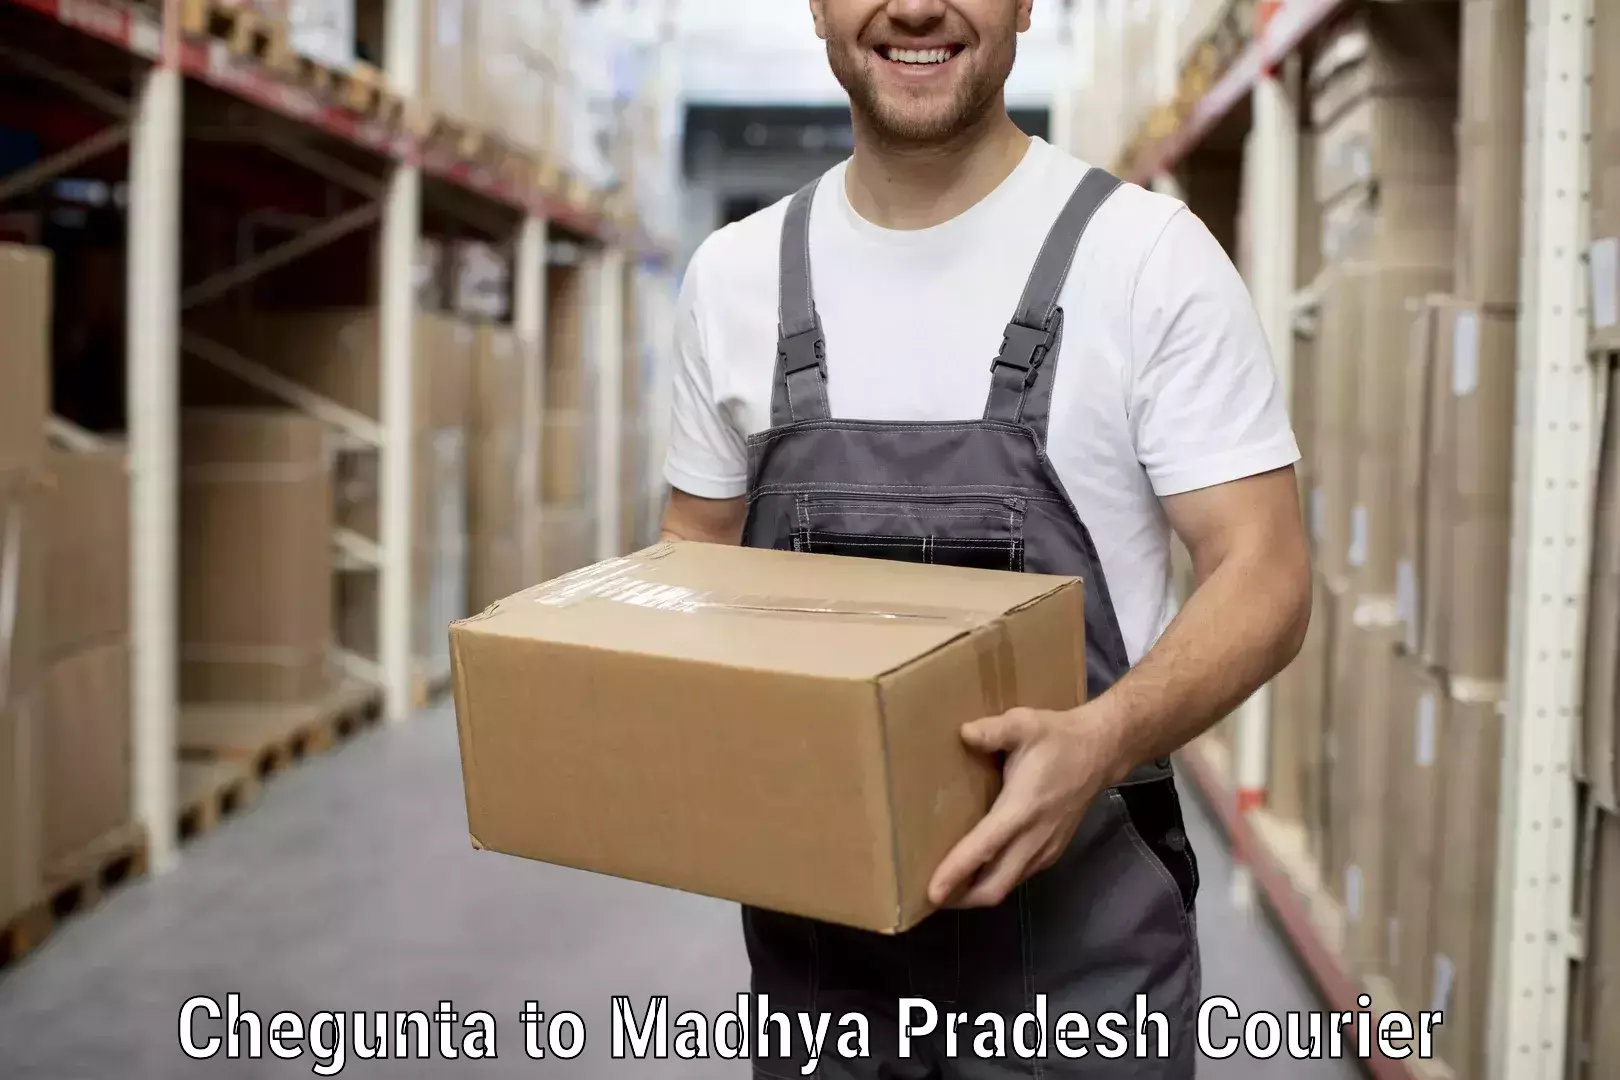 Furniture delivery service Chegunta to Dewas